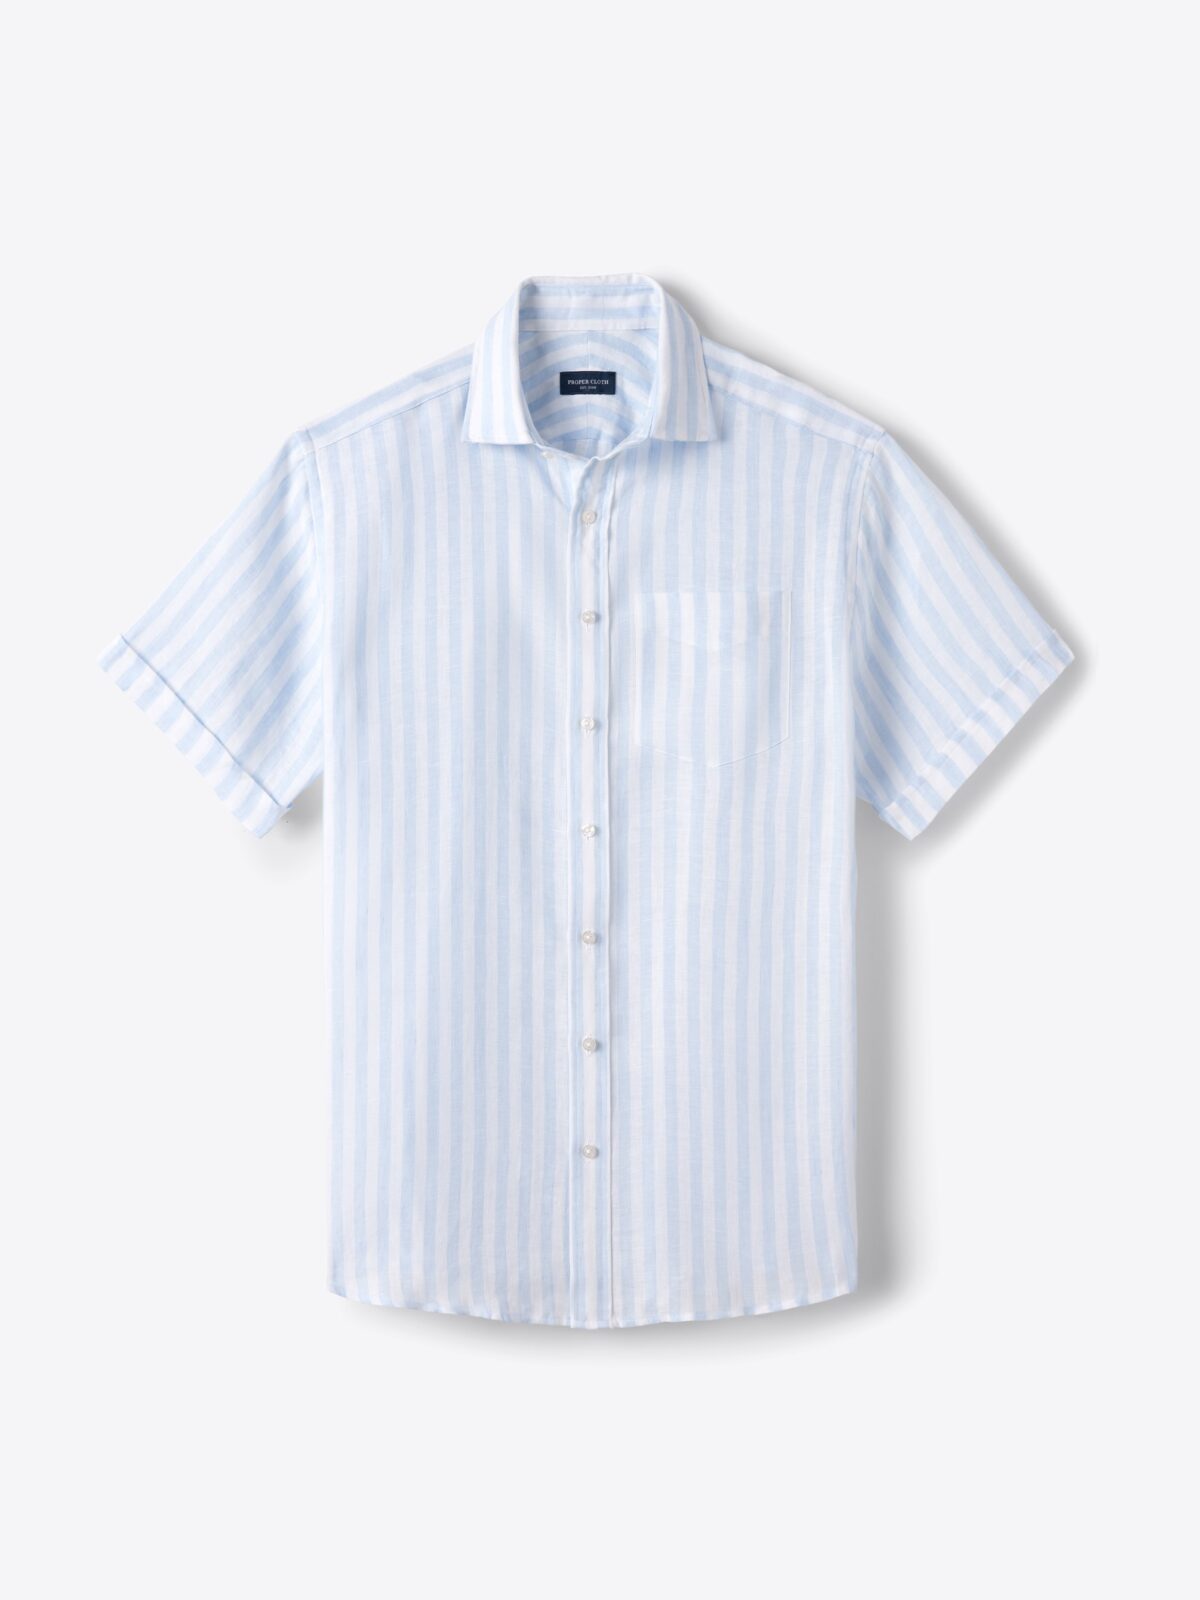 Baird McNutt Light Blue Wide Stripe Irish Linen Shirt by Proper Cloth